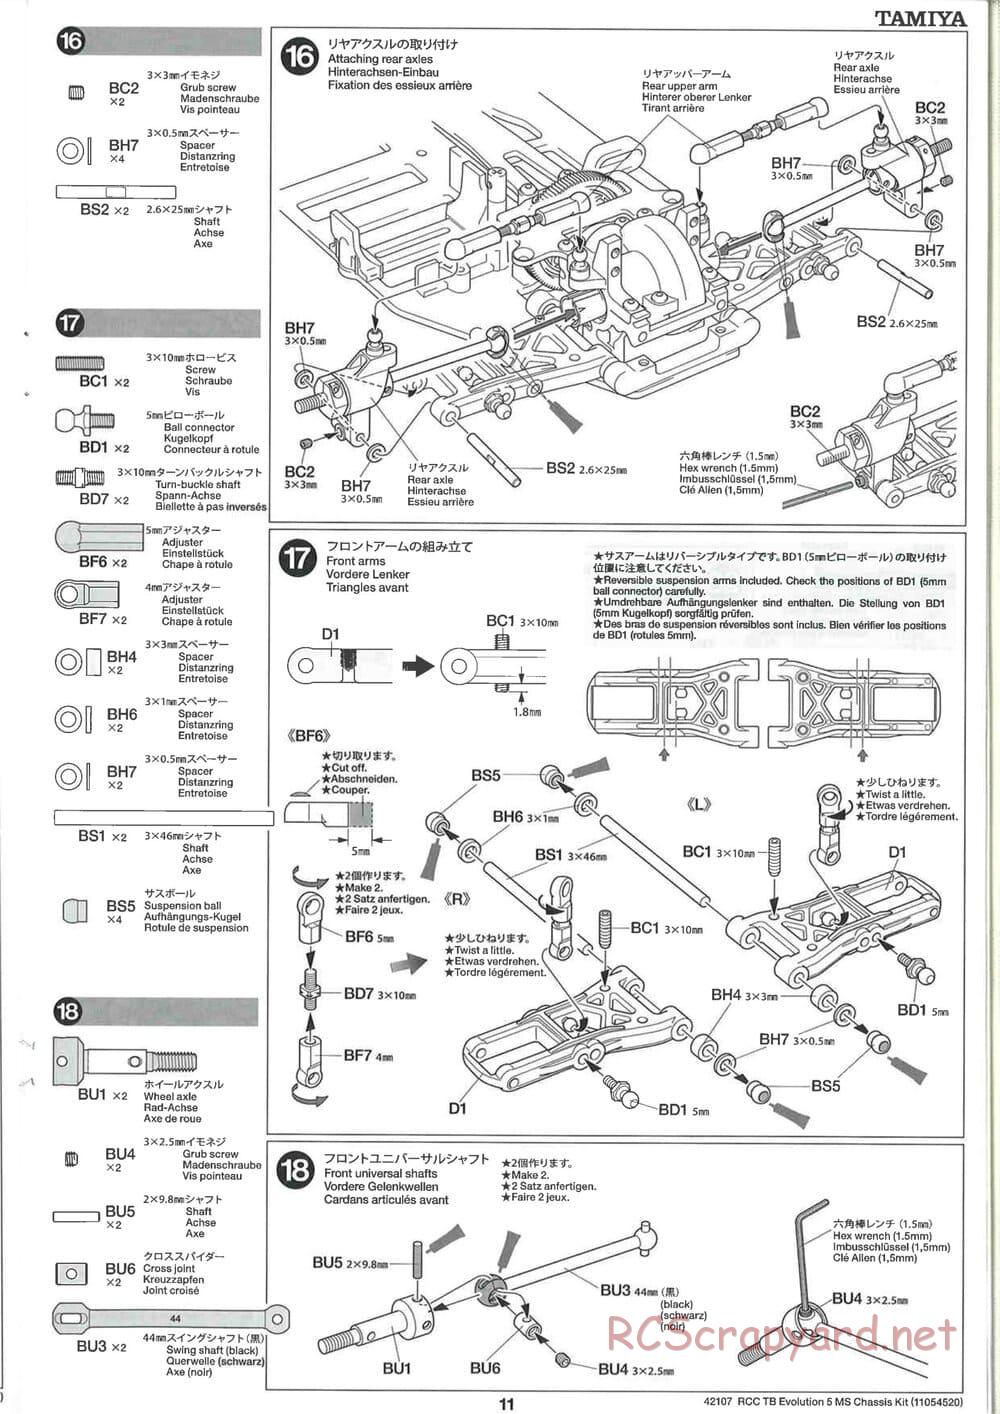 Tamiya - TB Evolution 5 MS Chassis - Manual - Page 11